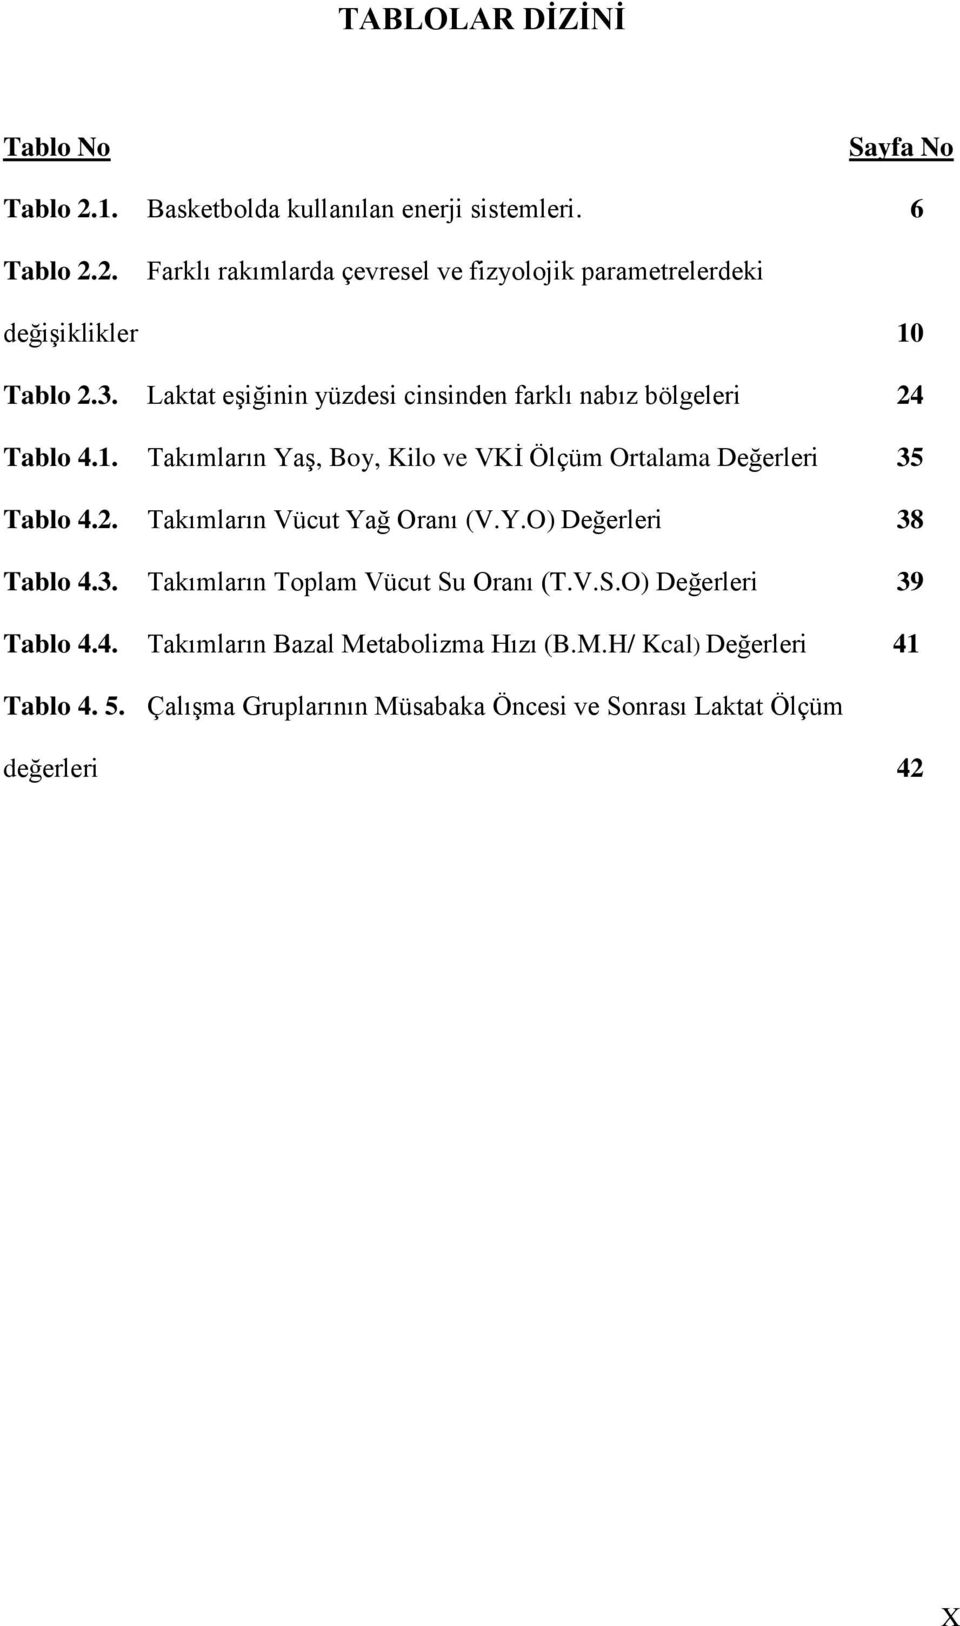 Y.O) Değerleri 38 Tablo 4.3. Takımların Toplam Vücut Su Oranı (T.V.S.O) Değerleri 39 Tablo 4.4. Takımların Bazal Metabolizma Hızı (B.M.H/ Kcal) Değerleri 41 Tablo 4.